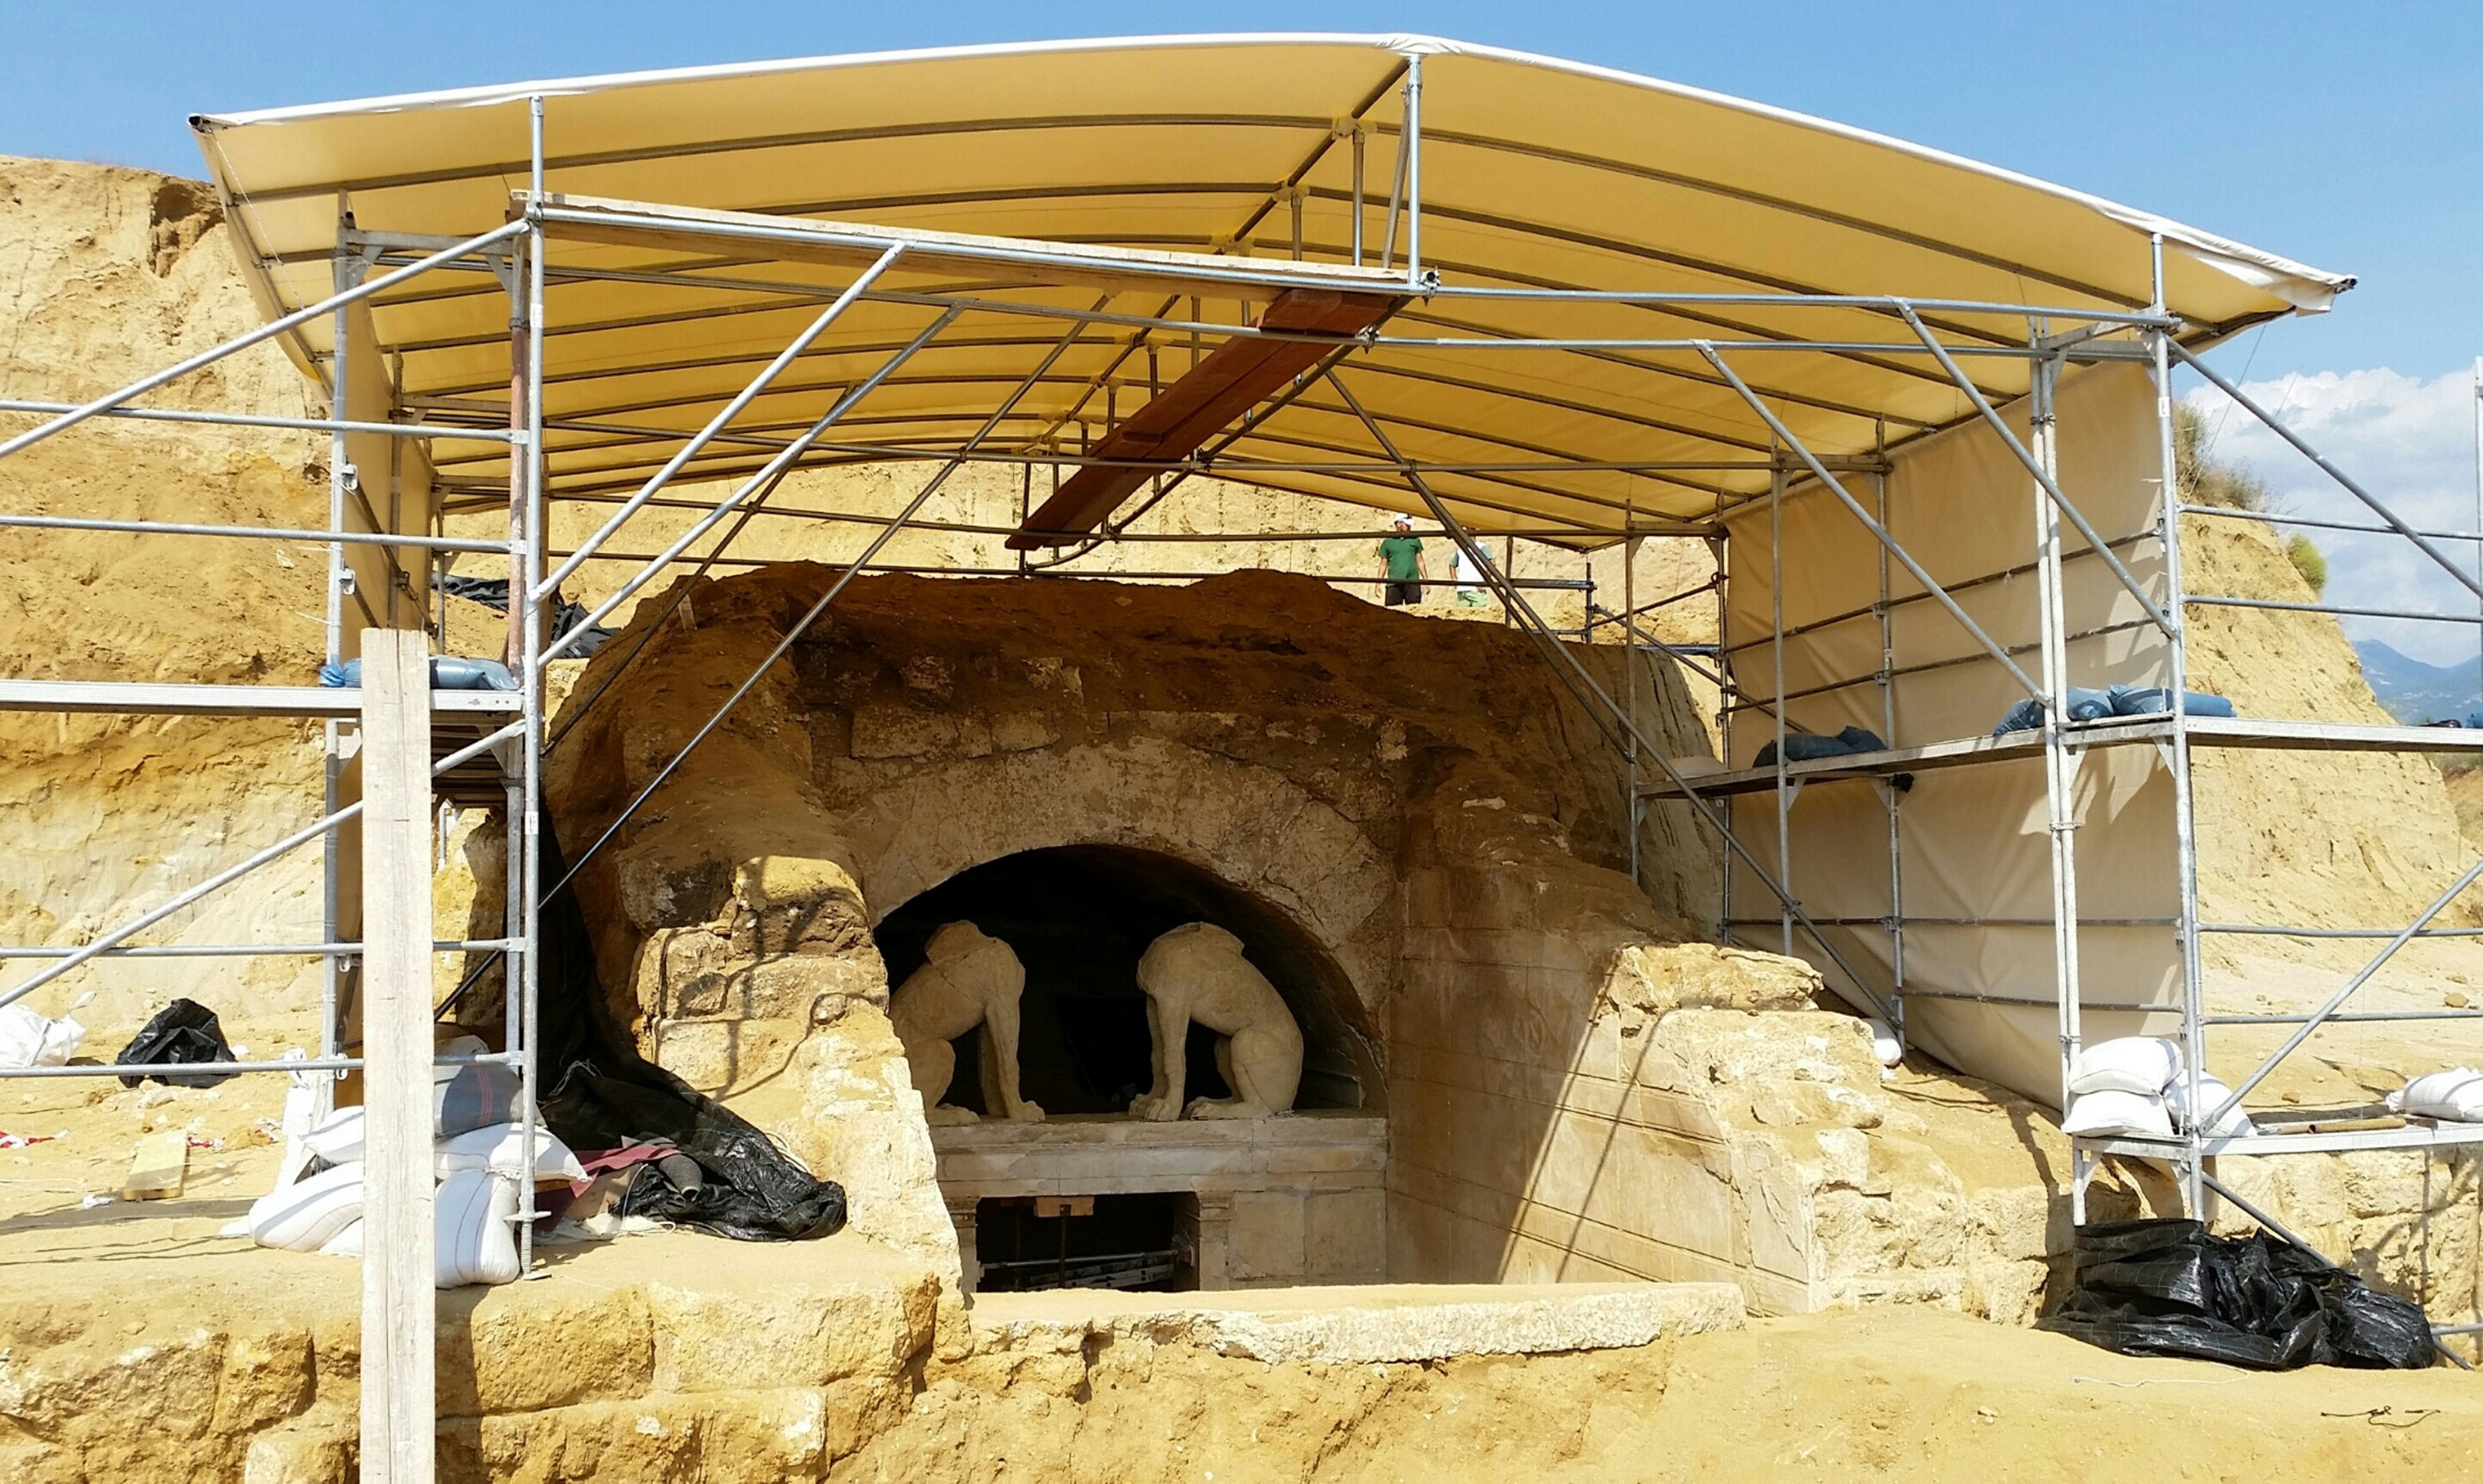 Αμφίπολη: τώρα ξεκινάει ο τάφος! – Άφωνοι οι επιστήμονες από τη μοναδική κατασκευή